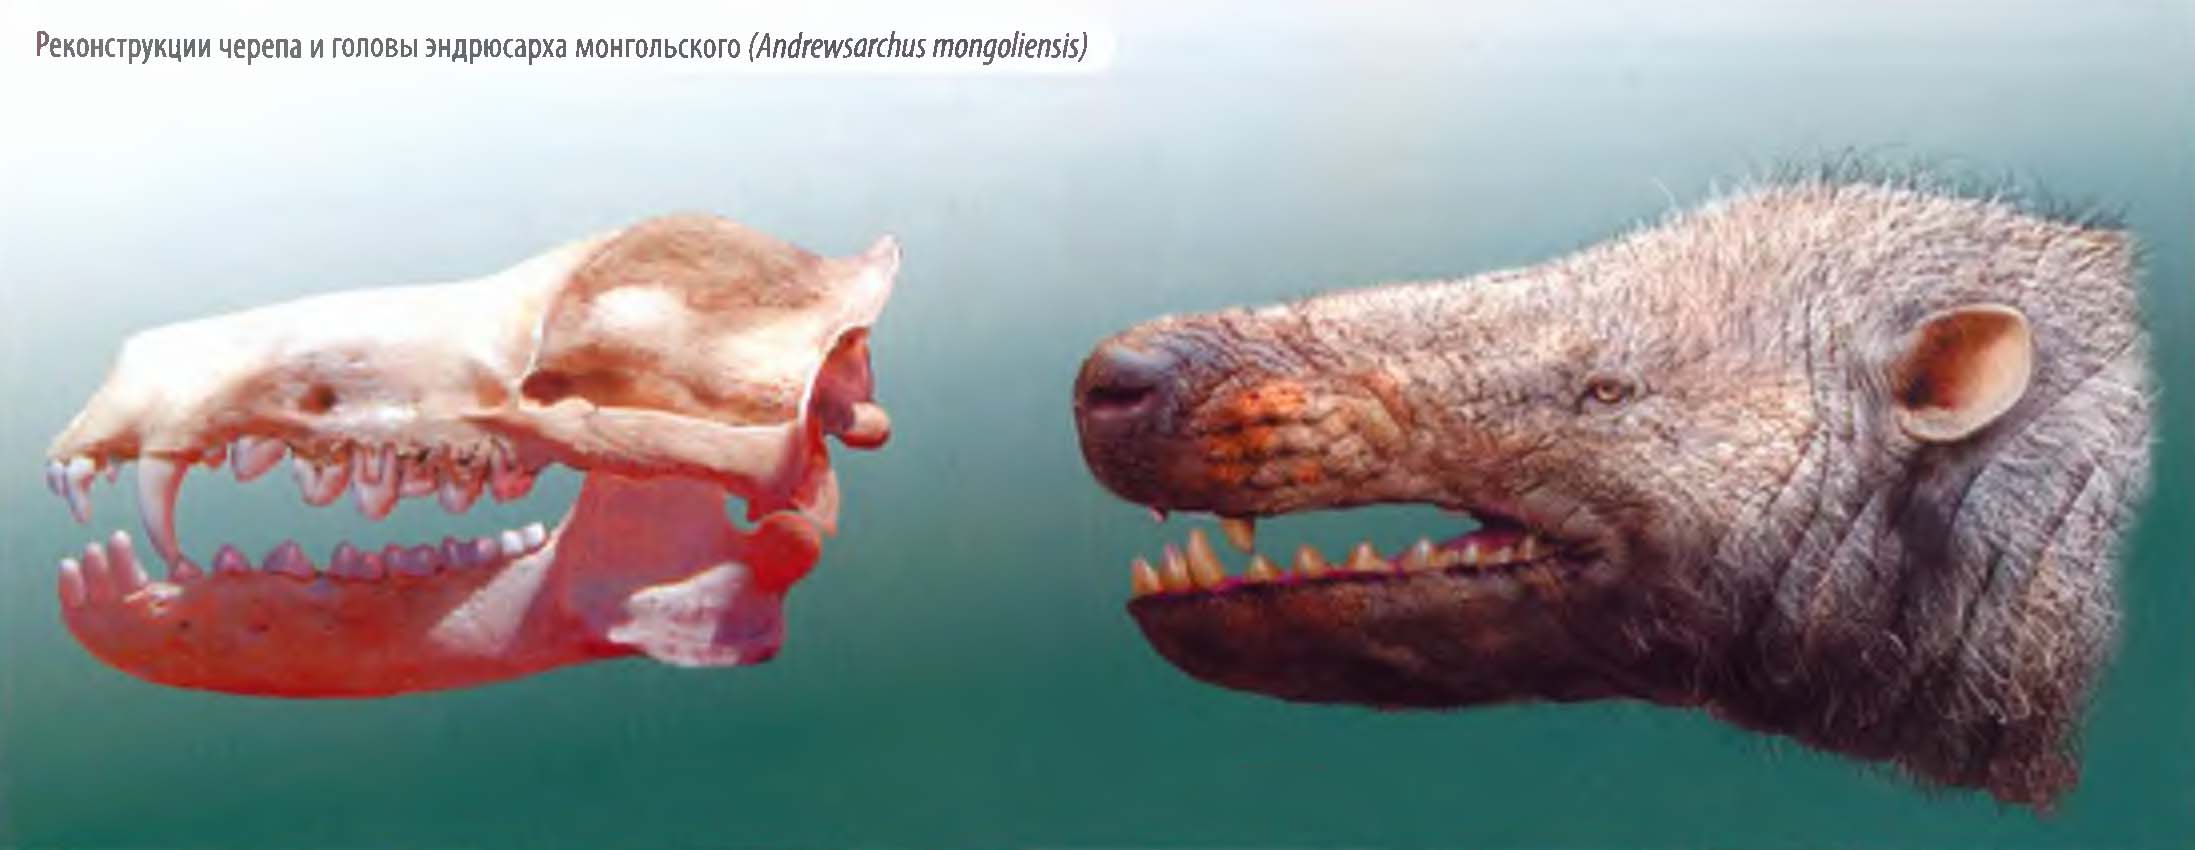 Реконструкции черепа и головы эндрюсарха монгольского (Andrewsarchus mongoliensis).